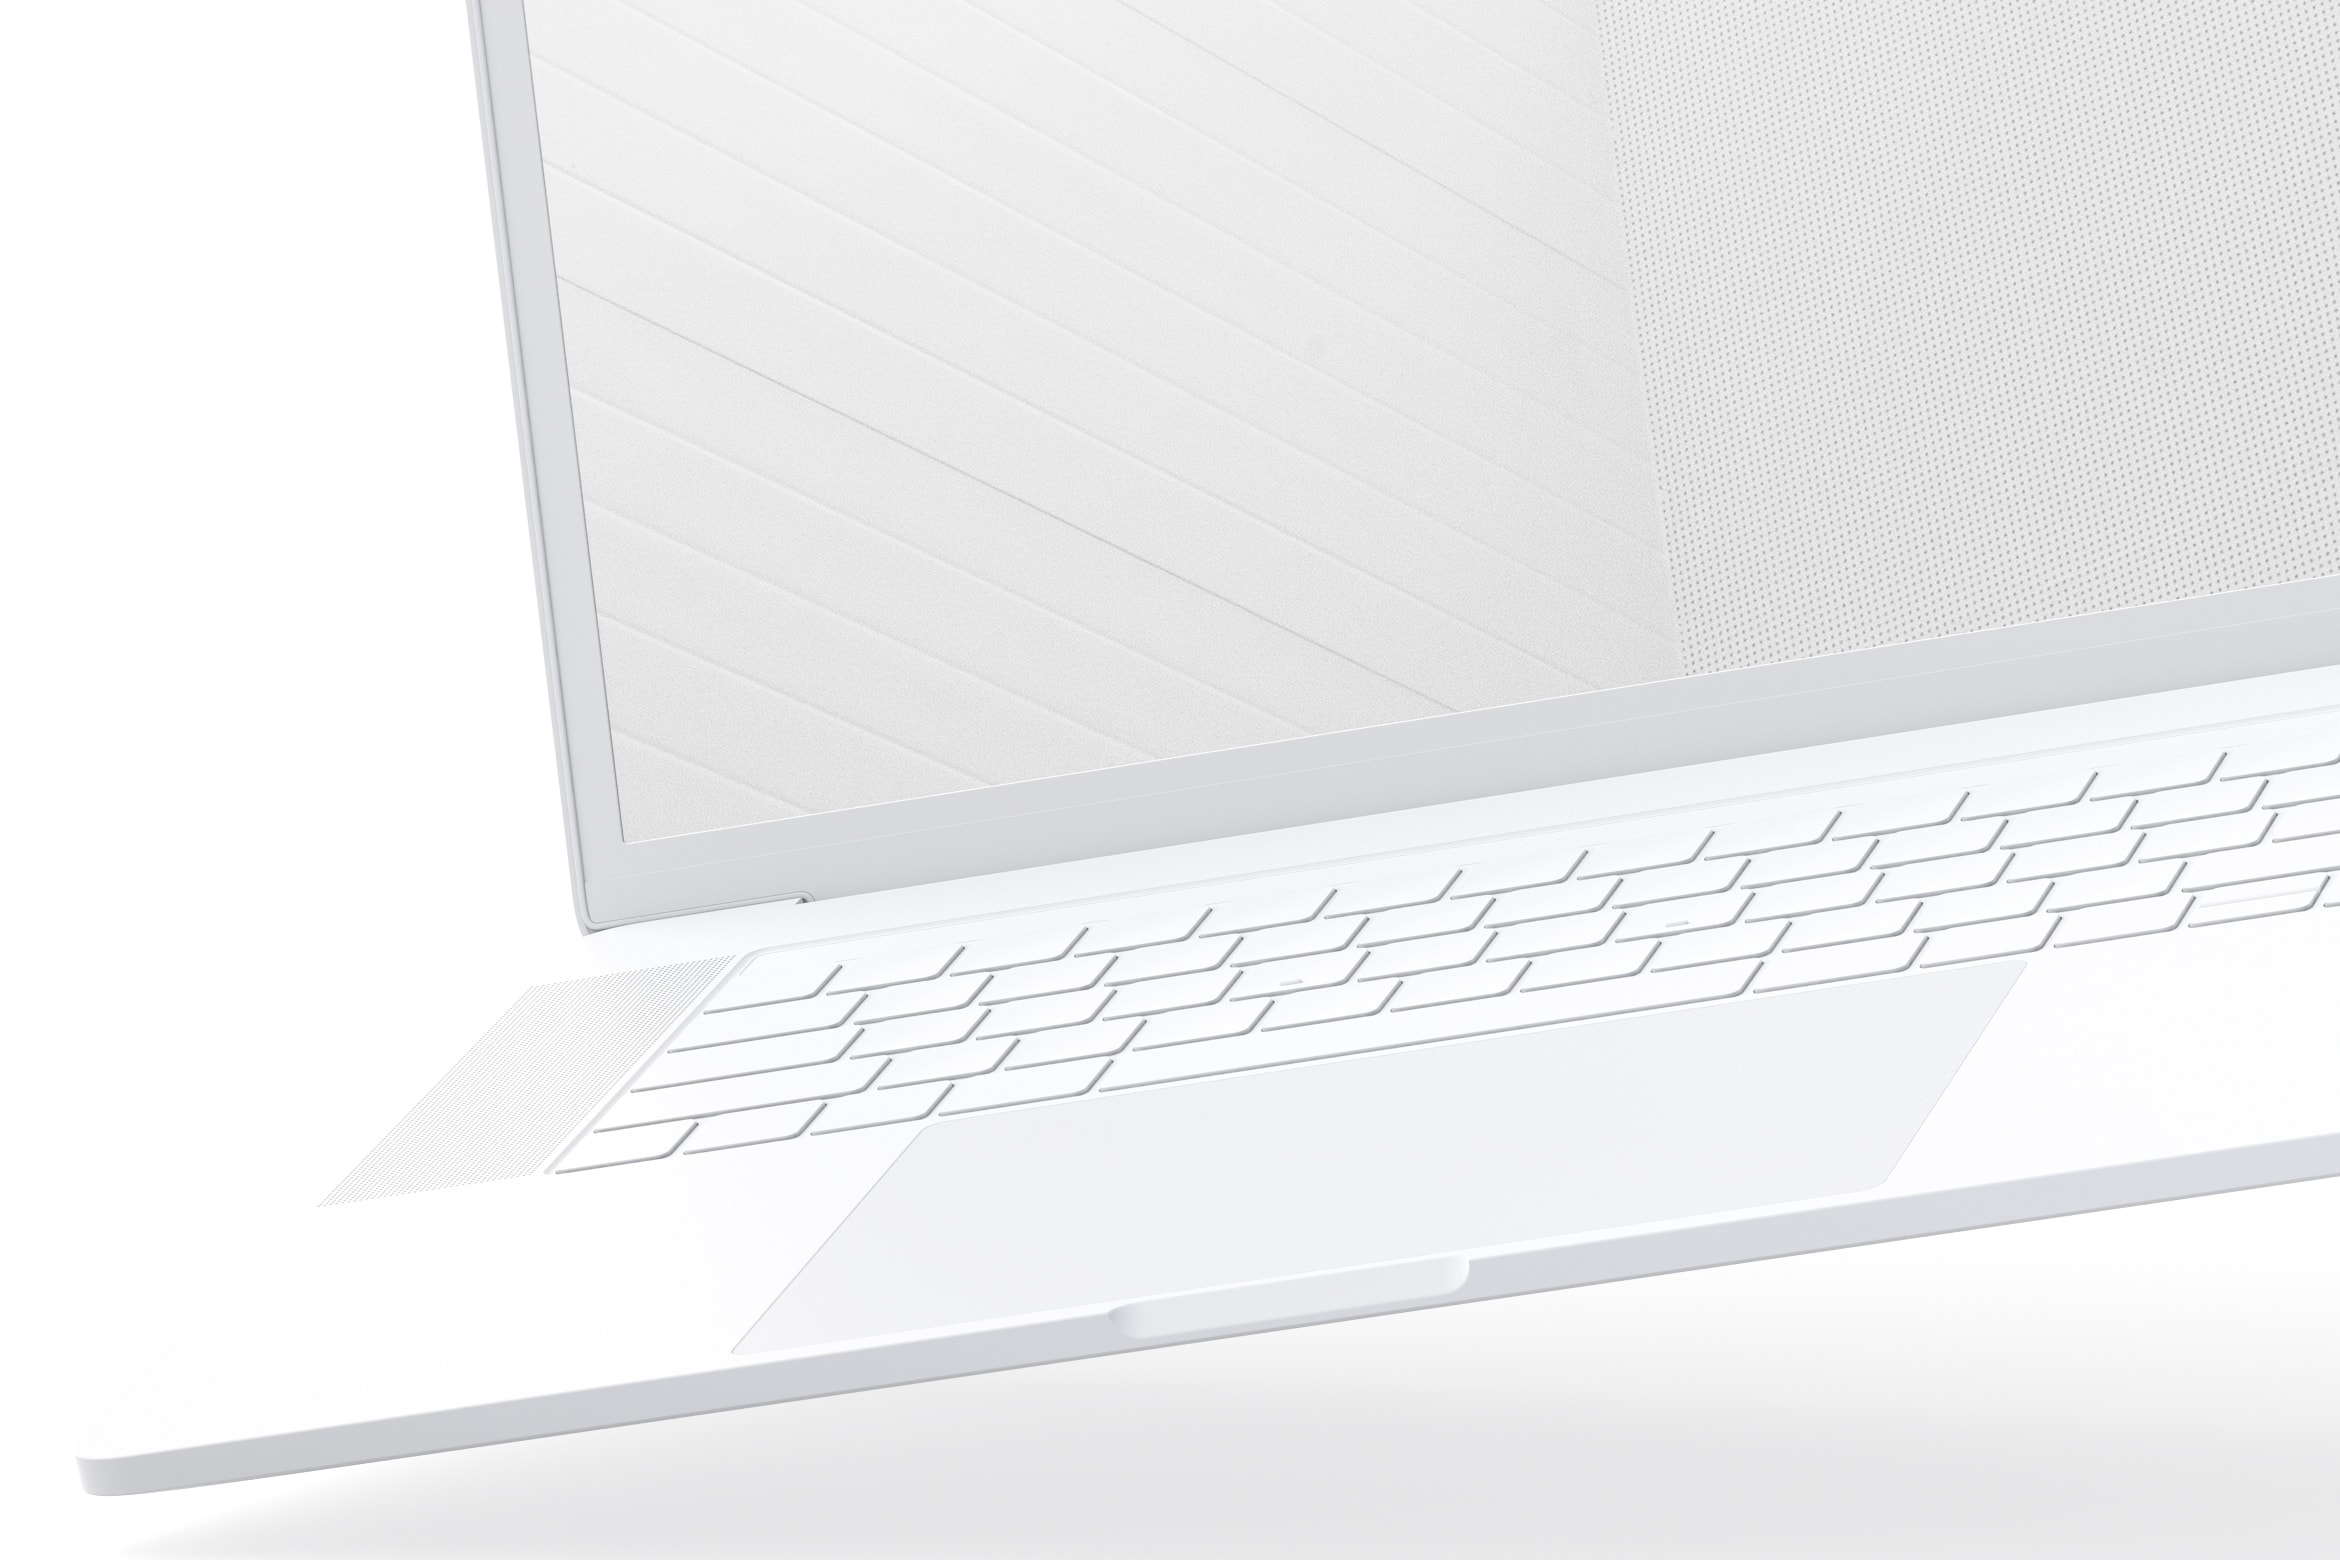 15寸MacBook Pro笔记本电脑屏幕演示样机模板 Clay MacBook Pro 15" with Touch Bar Mockup插图5